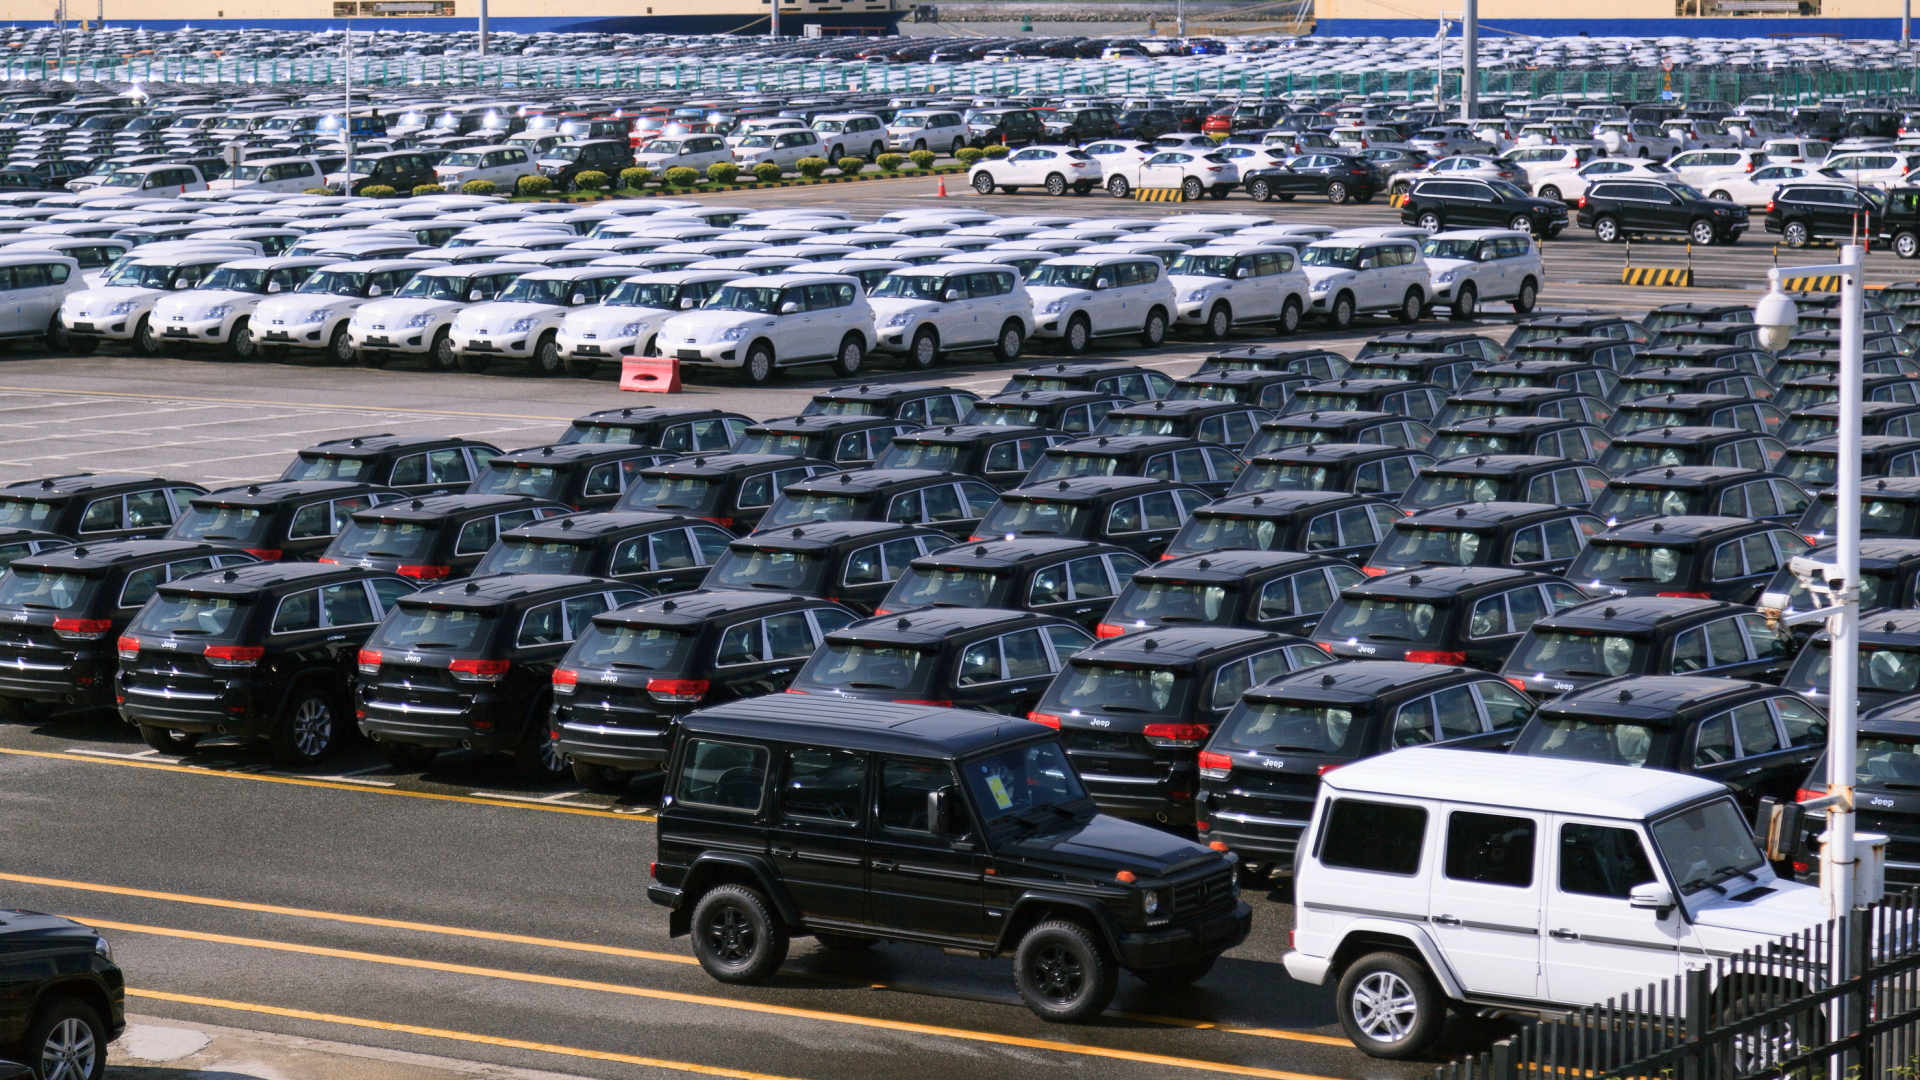 US-Importautos vom Typ Chrysler Jeep stehen auf einem Parkplatz in Guangzhou | Bildquelle: dpa